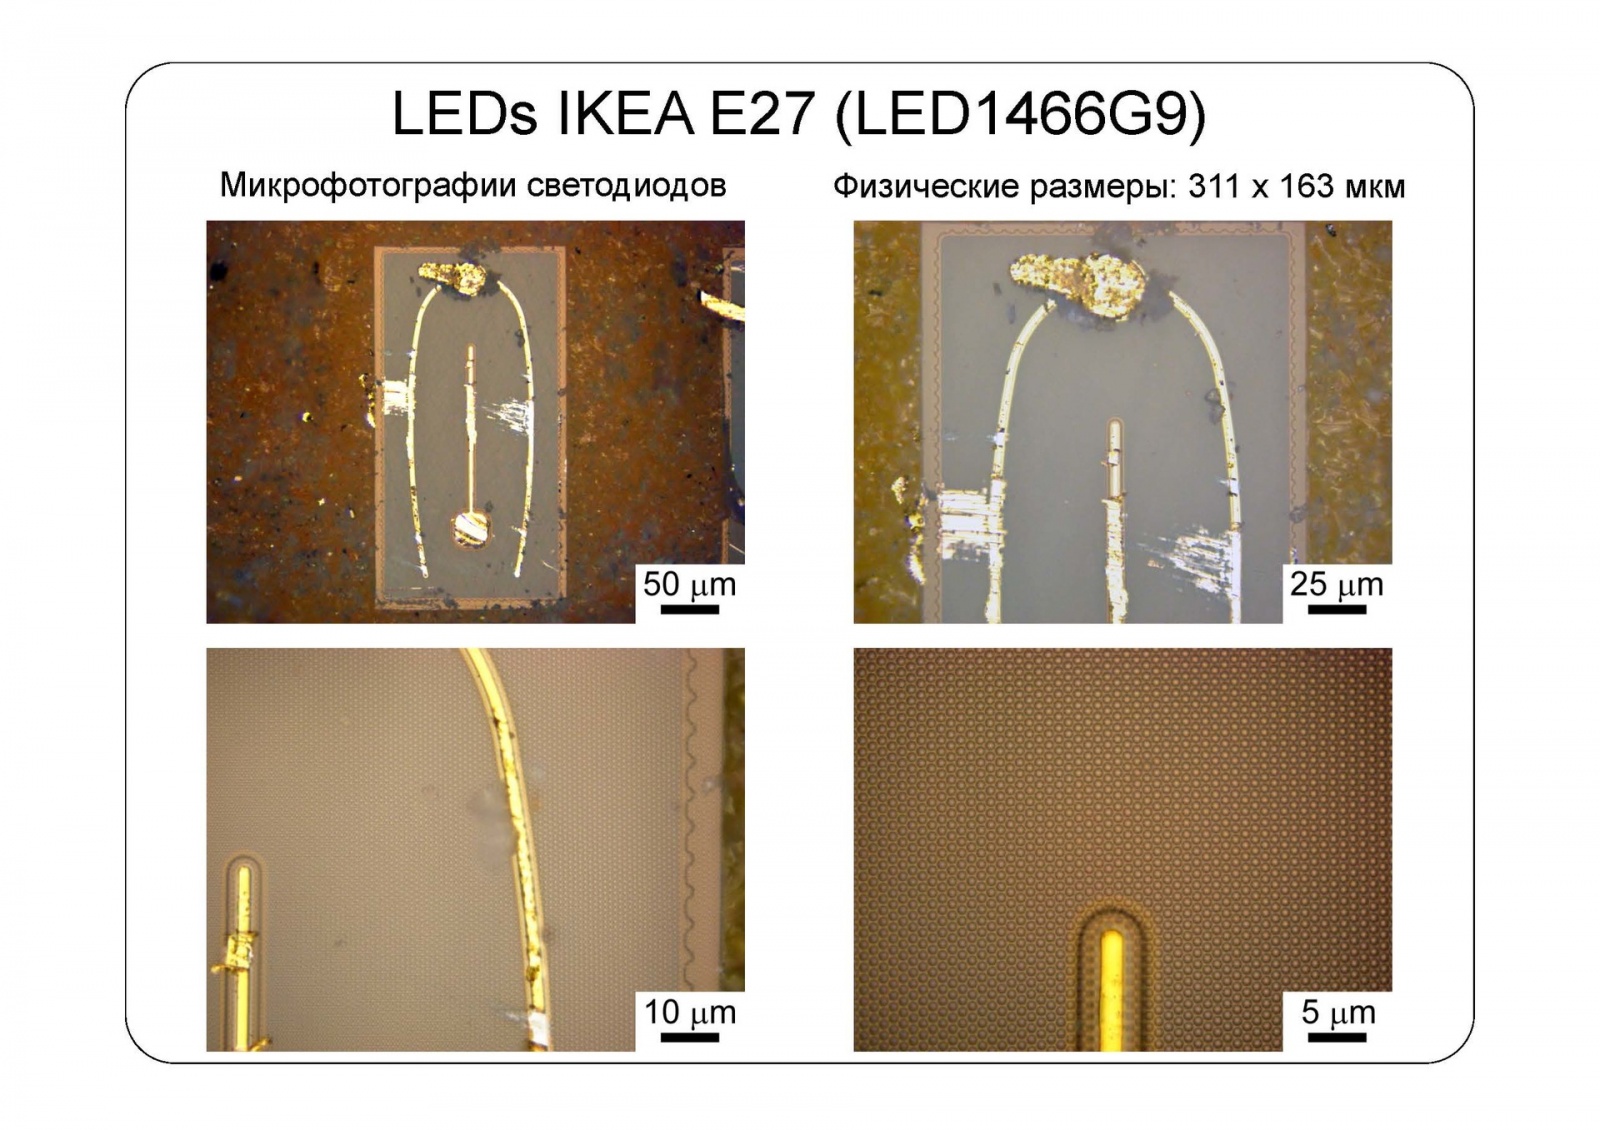 Взгляд изнутри: IKEA LED наносит ответный удар - 9